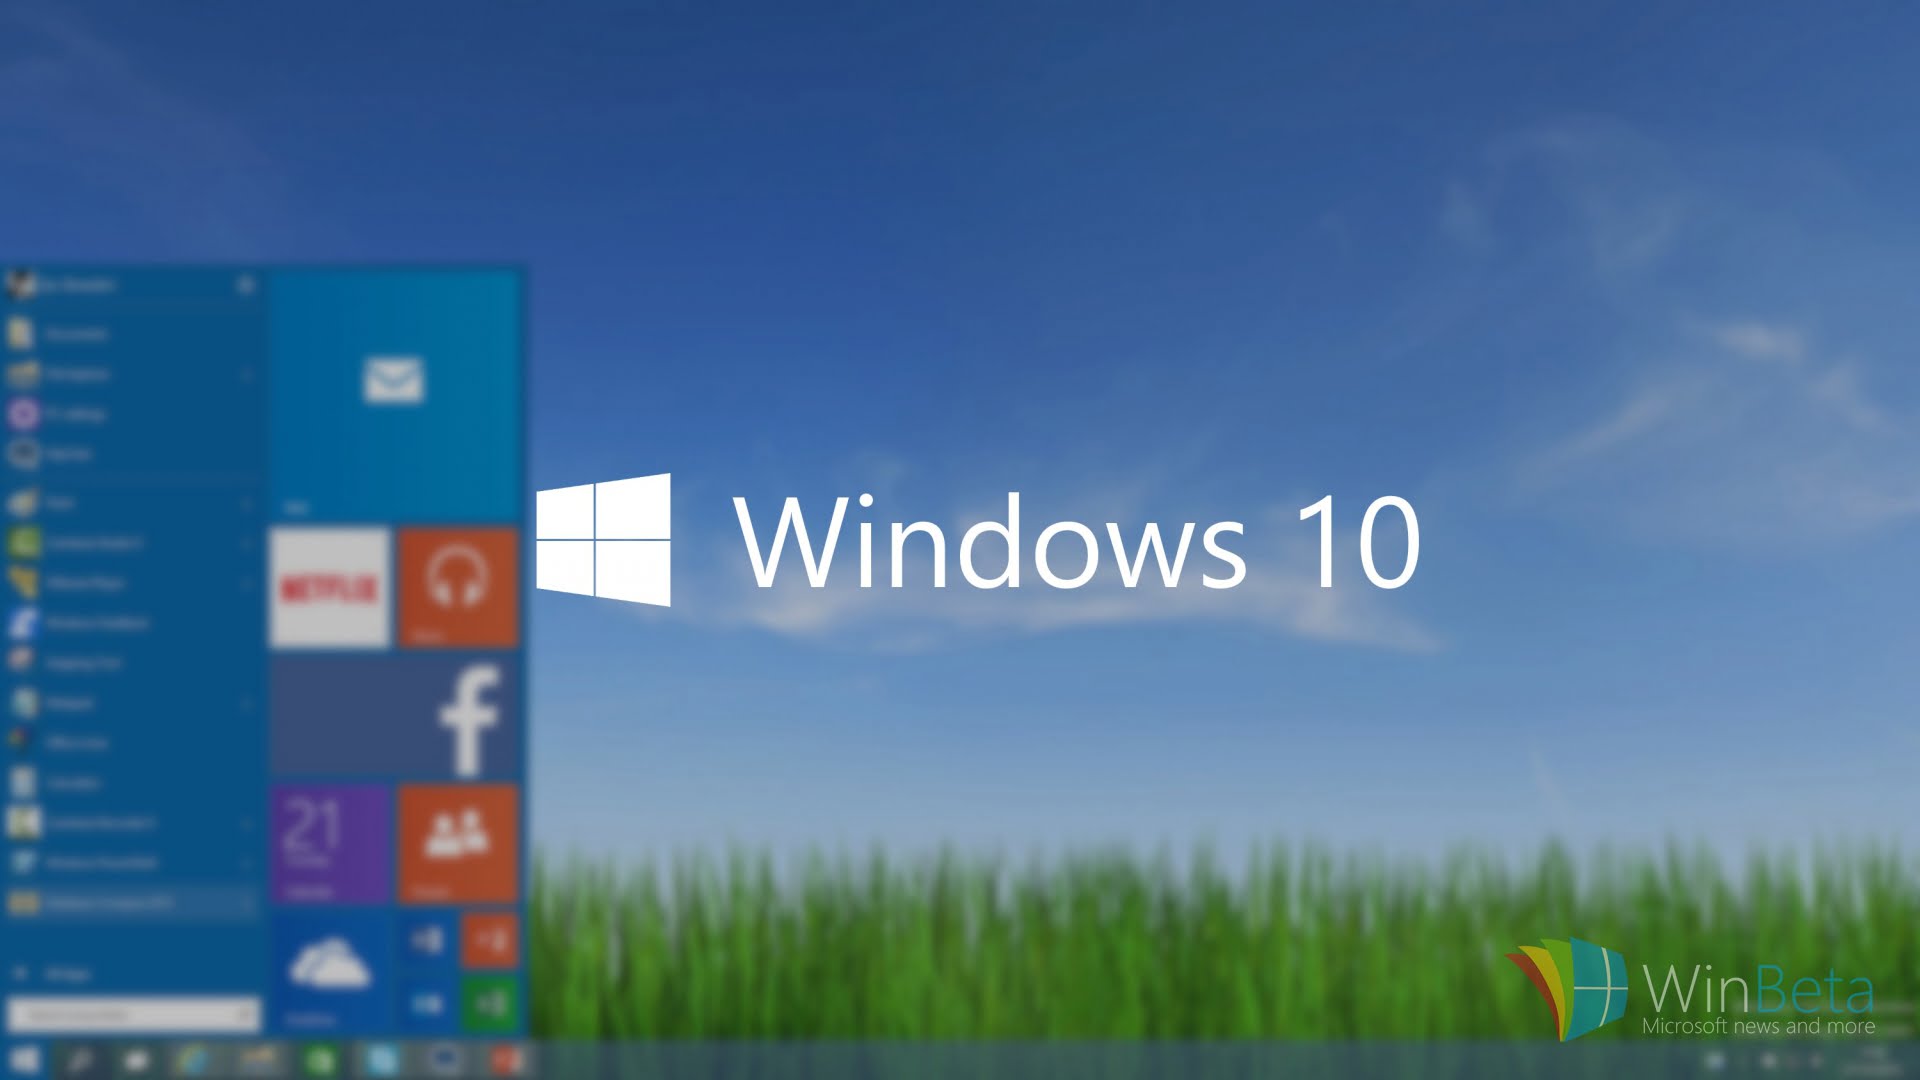 Πώς να κάνω δωρεάν αναβάθμιση στα Windows 10;